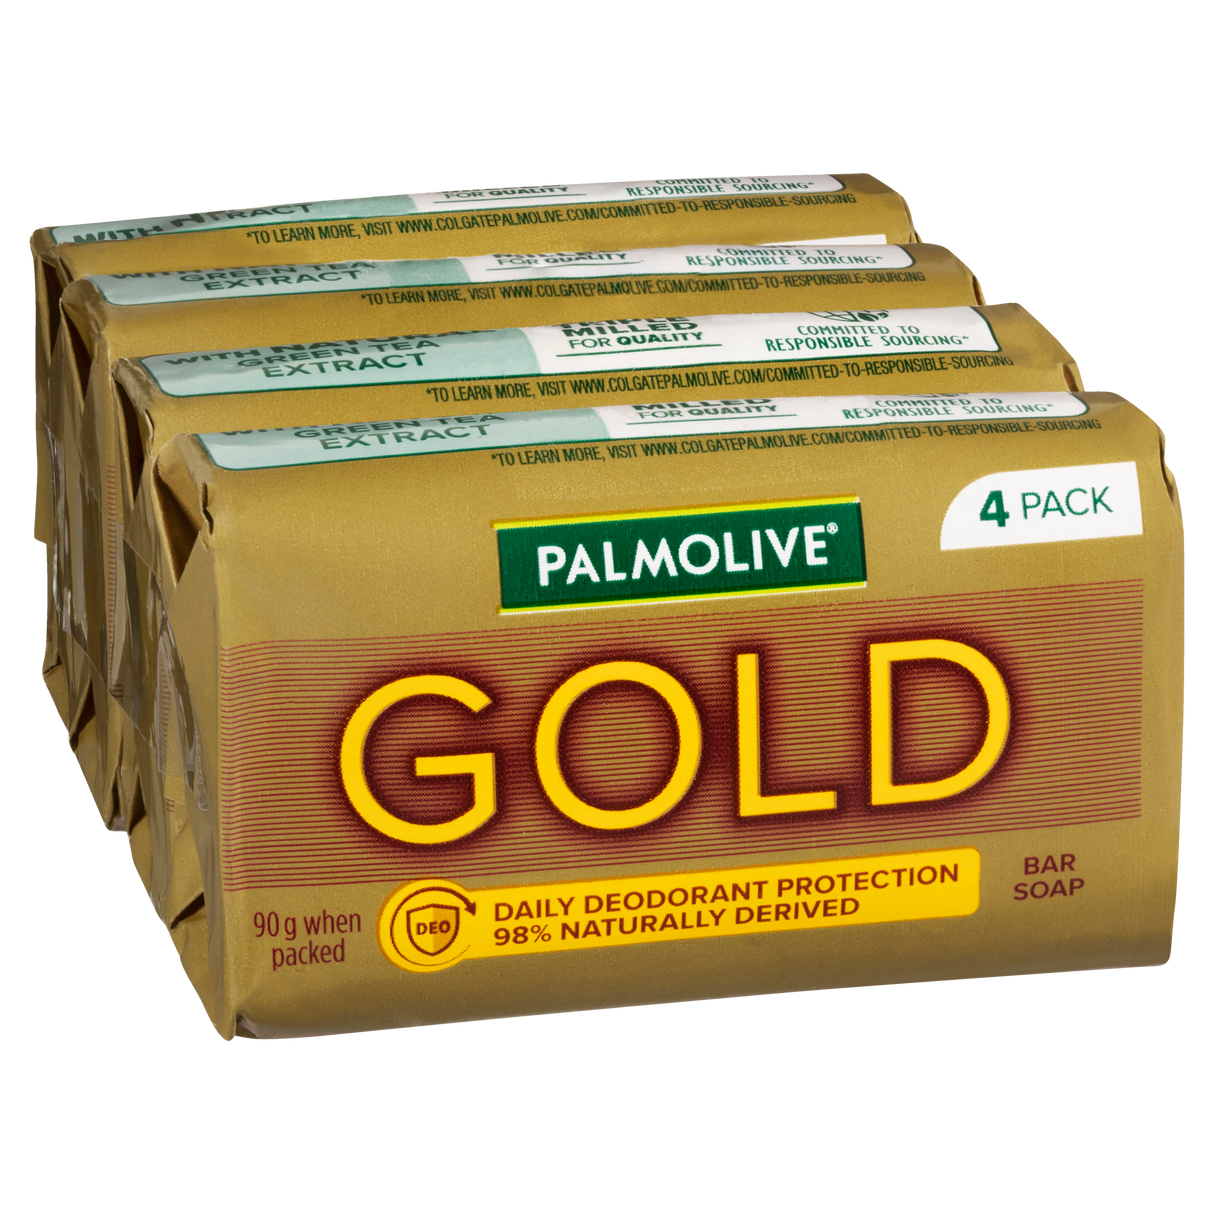 Palmolive Gold Bar Soap 90g 4 Pack